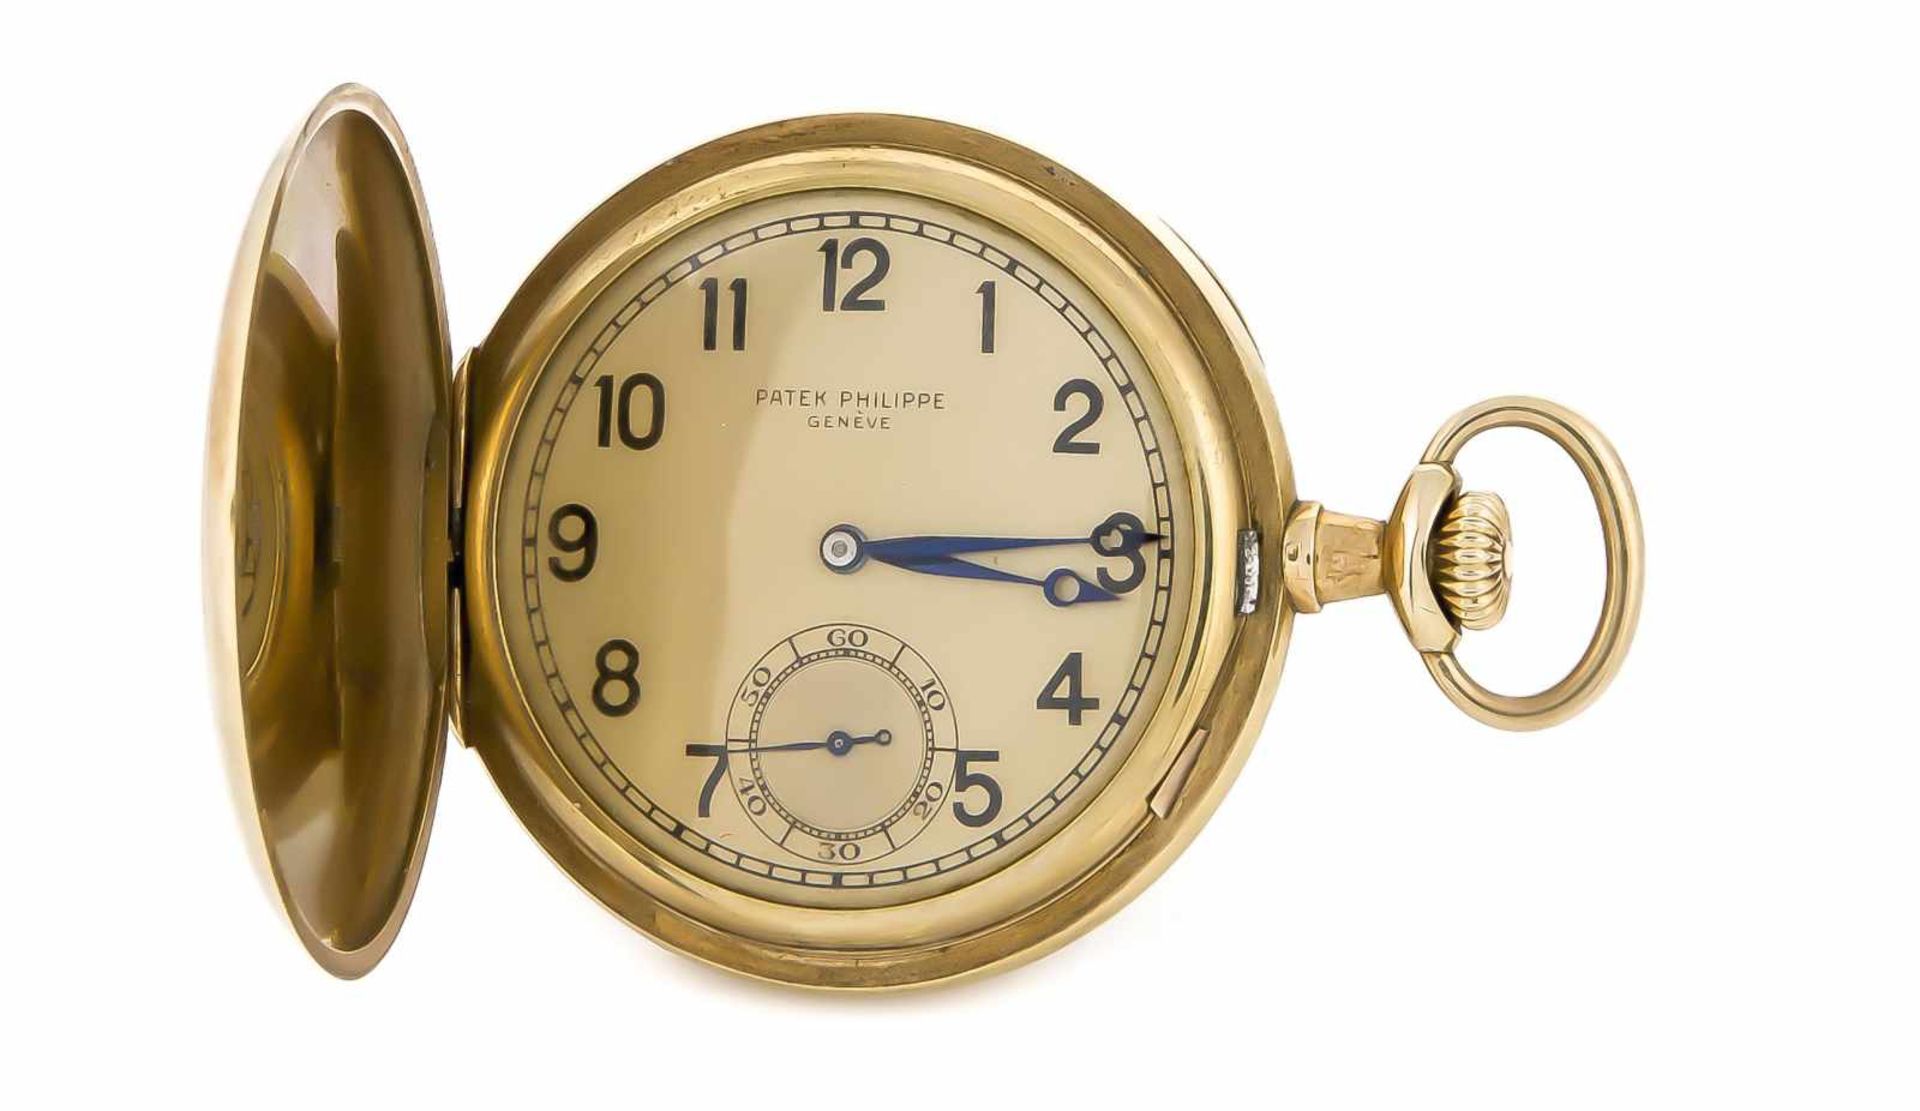 Sprungdeckel, Herrentaschenuhr Patek Philippe Geneve, 585 Gold, 3 Deckel, um 1900, Uhrwerksehr gut